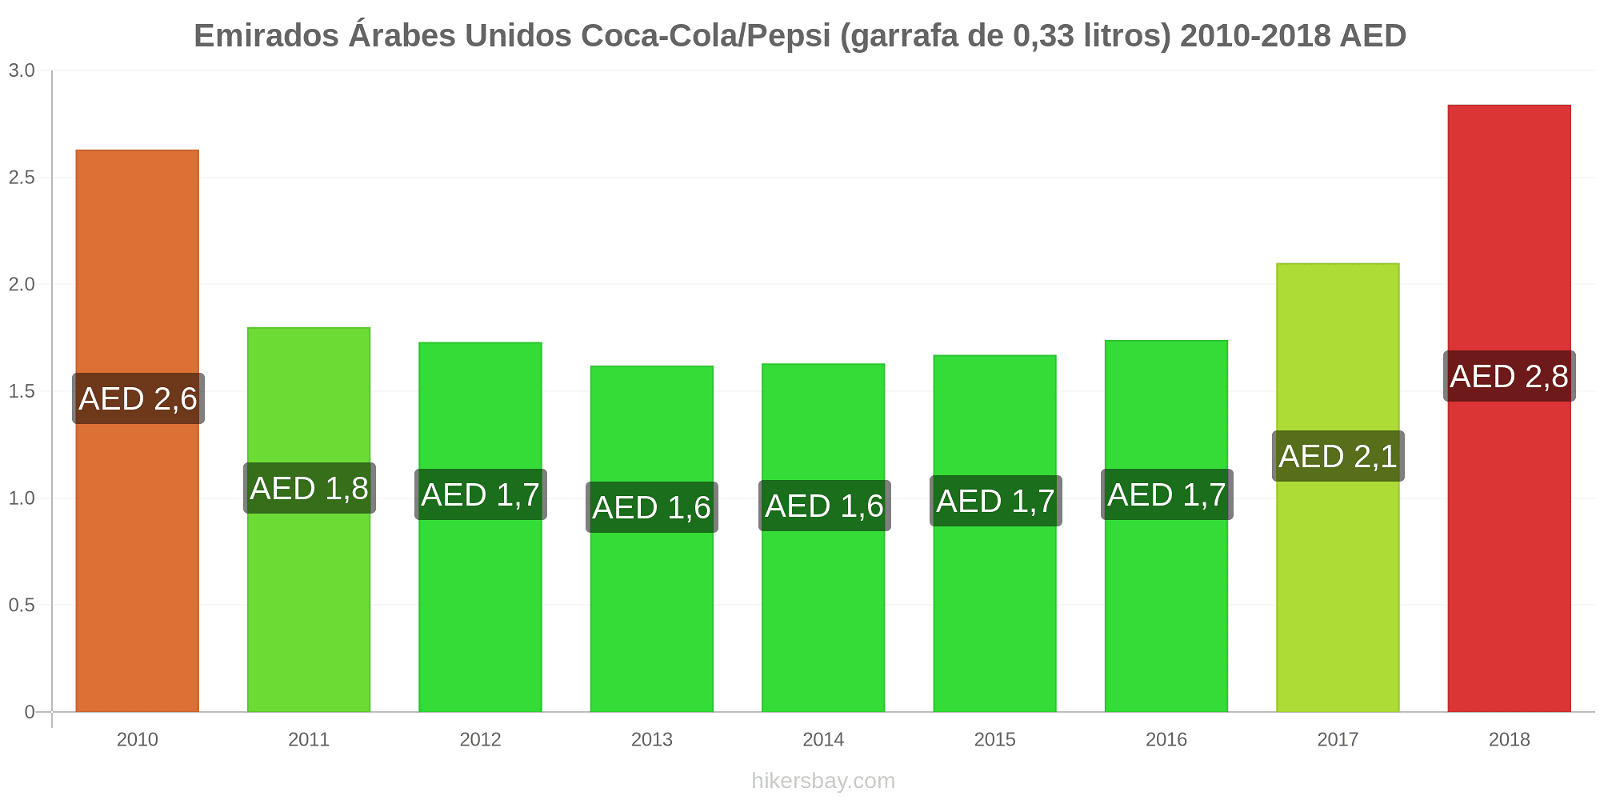 Emirados Árabes Unidos mudanças de preços Coca-Cola/Pepsi (garrafa de 0.33 litros) hikersbay.com